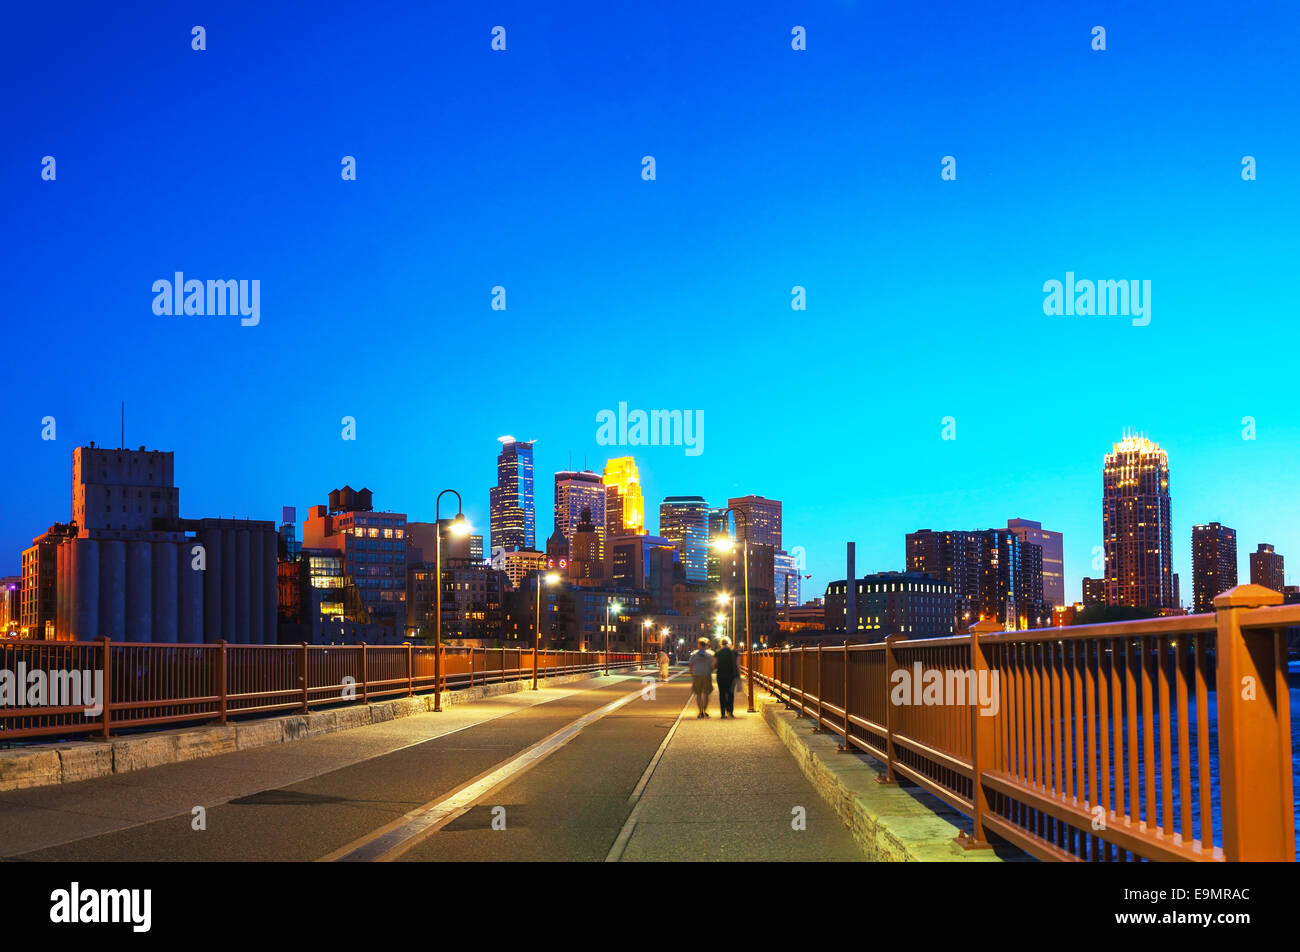 Downtown Minneapolis, Minnesota at night time Stock Photo